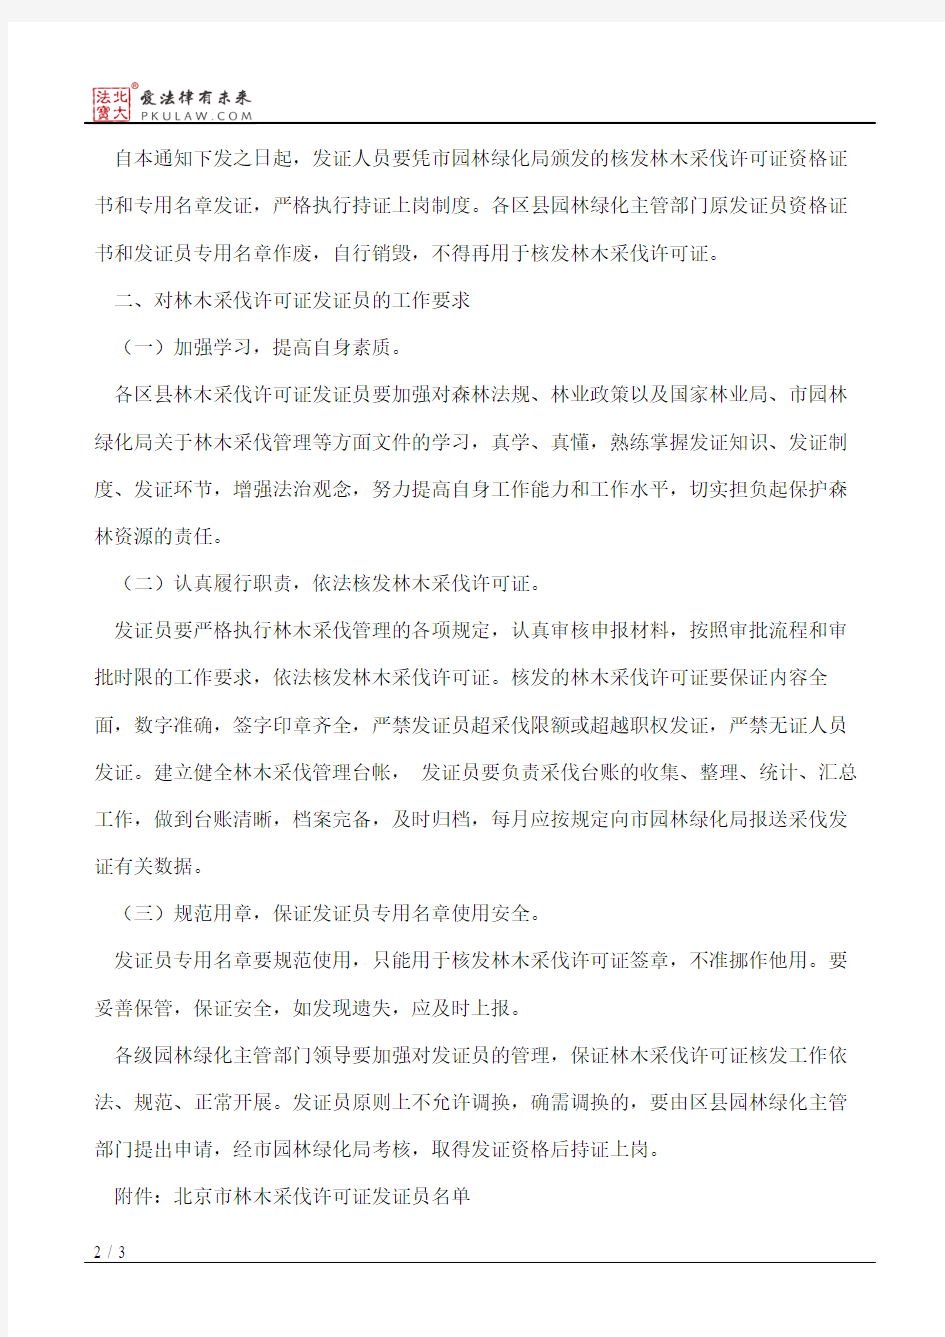 北京市园林绿化局关于重新核定全市林木采伐许可证发证员工作的通知